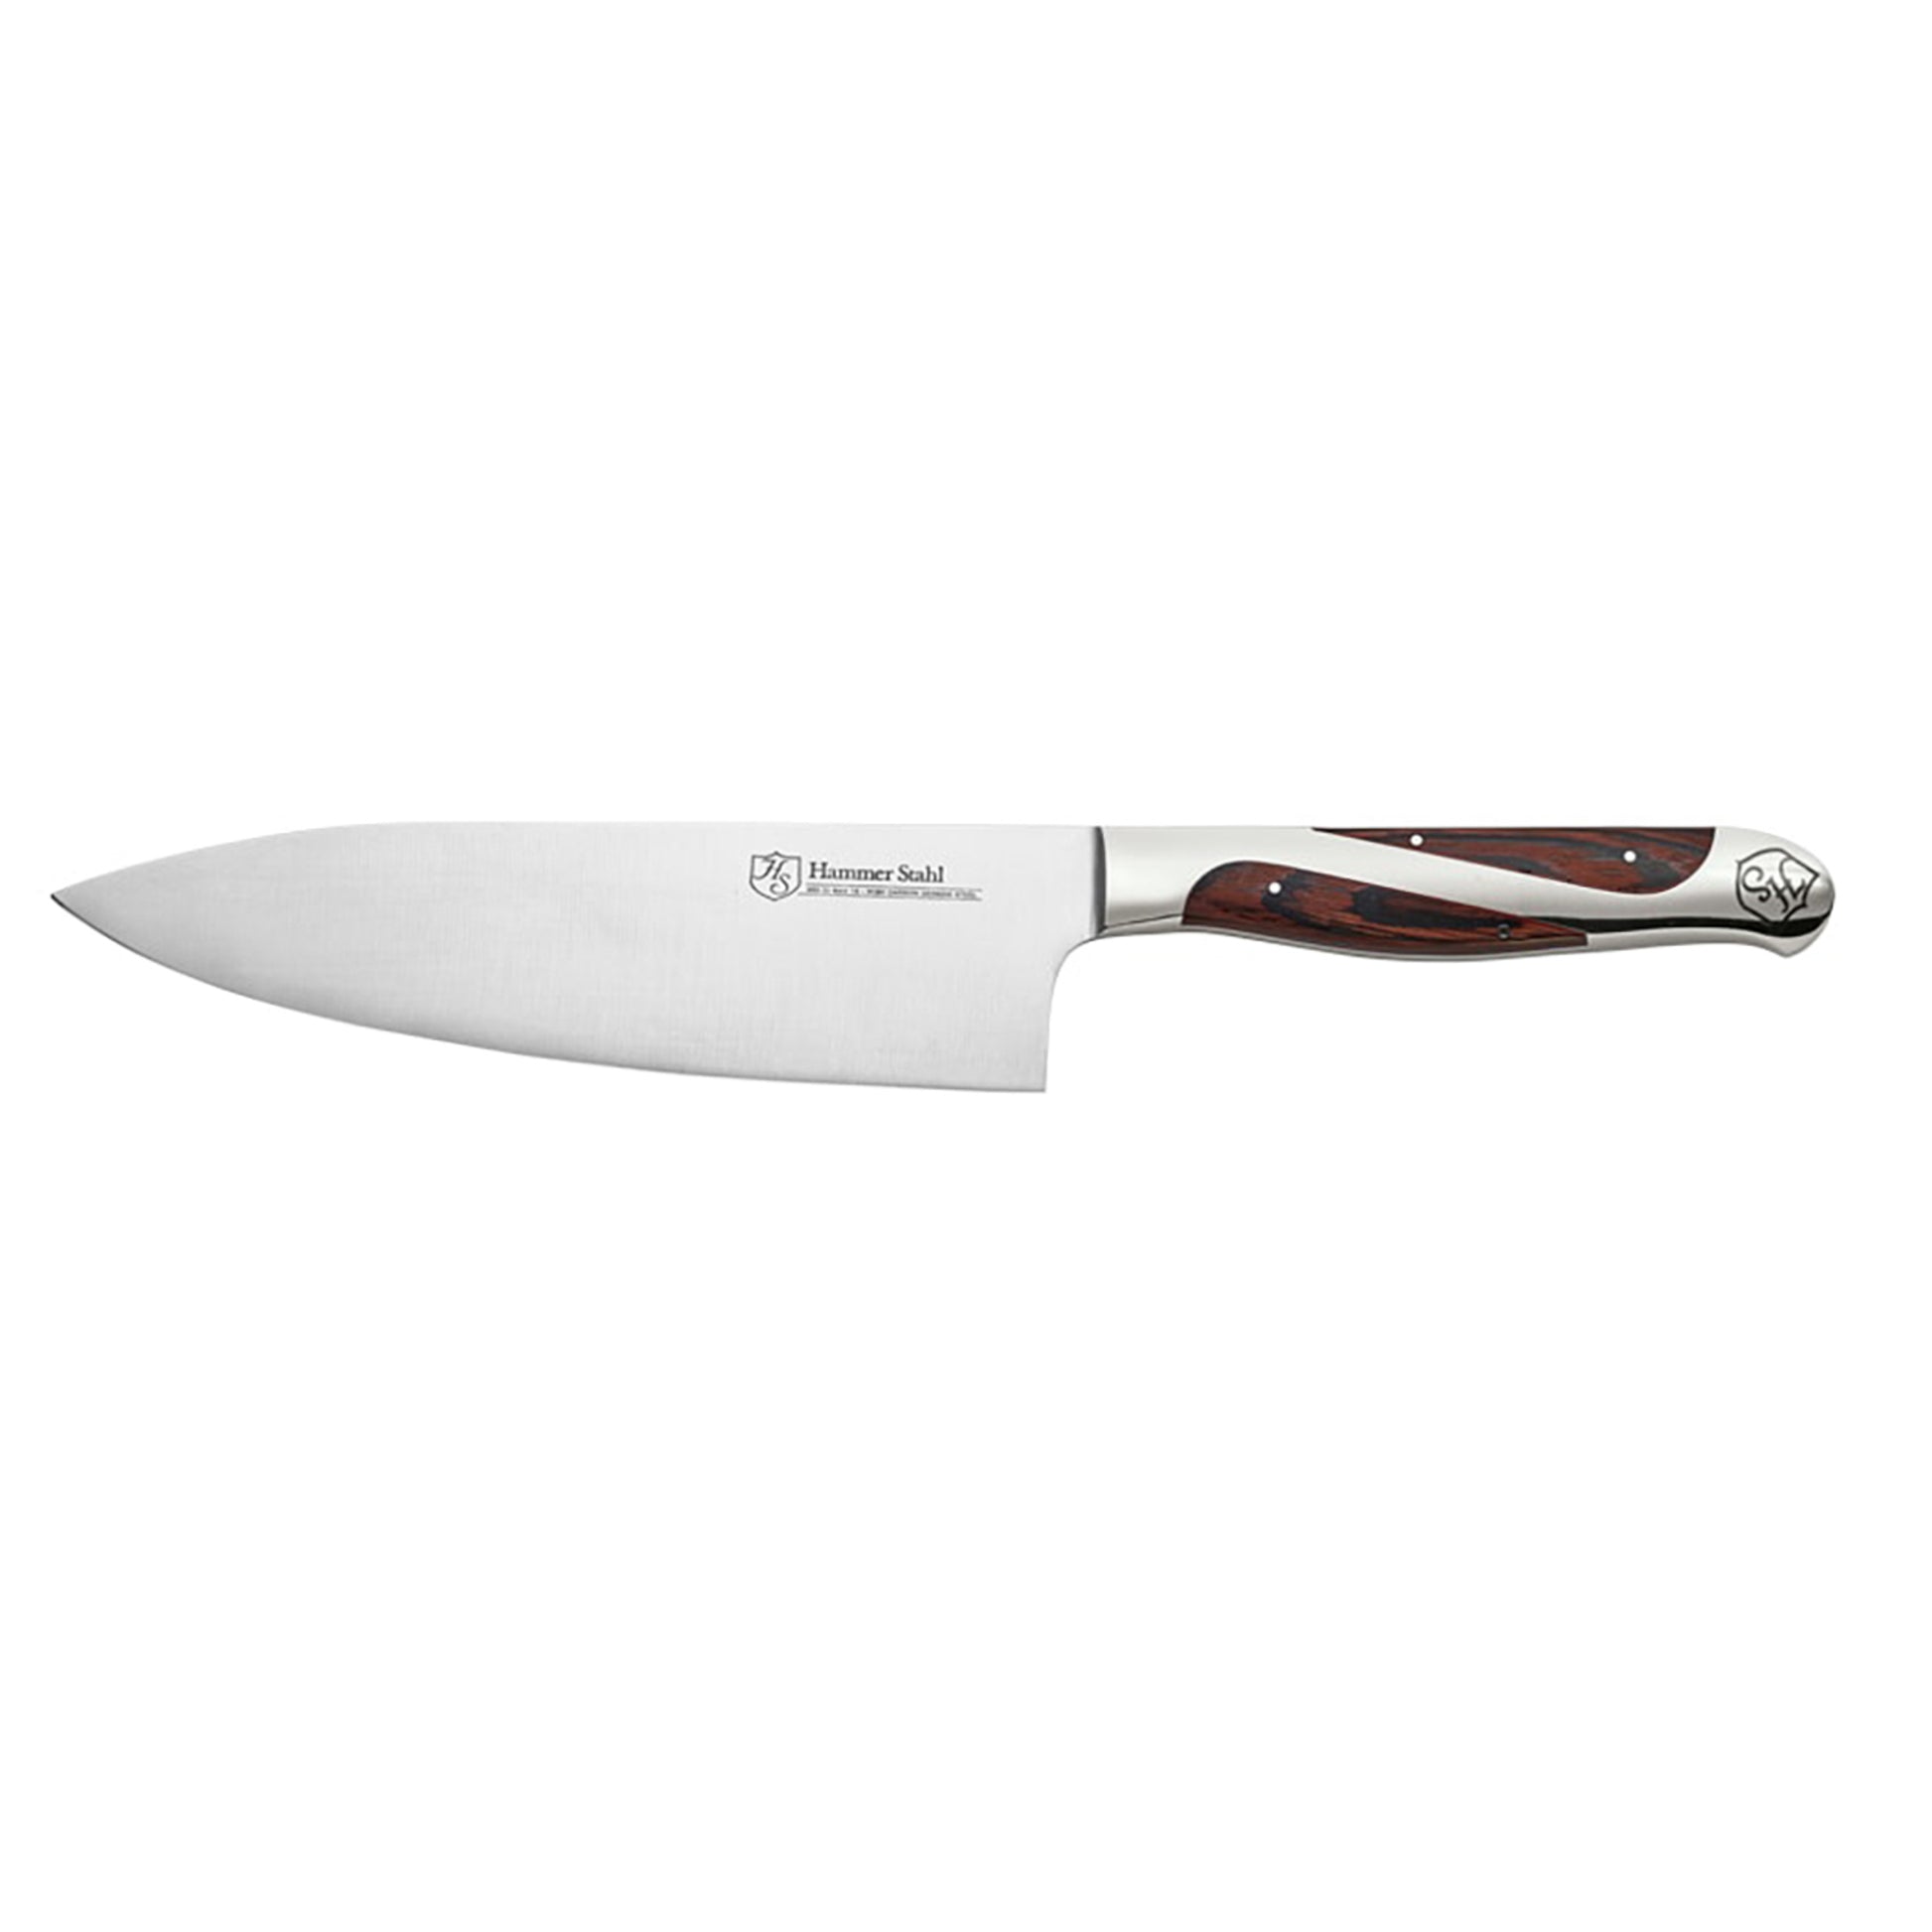 https://www.jkadams.com/cdn/shop/files/jk-adams-hammer-stahl-6-inch-chefs-knife.jpg?v=1684784994&width=1946